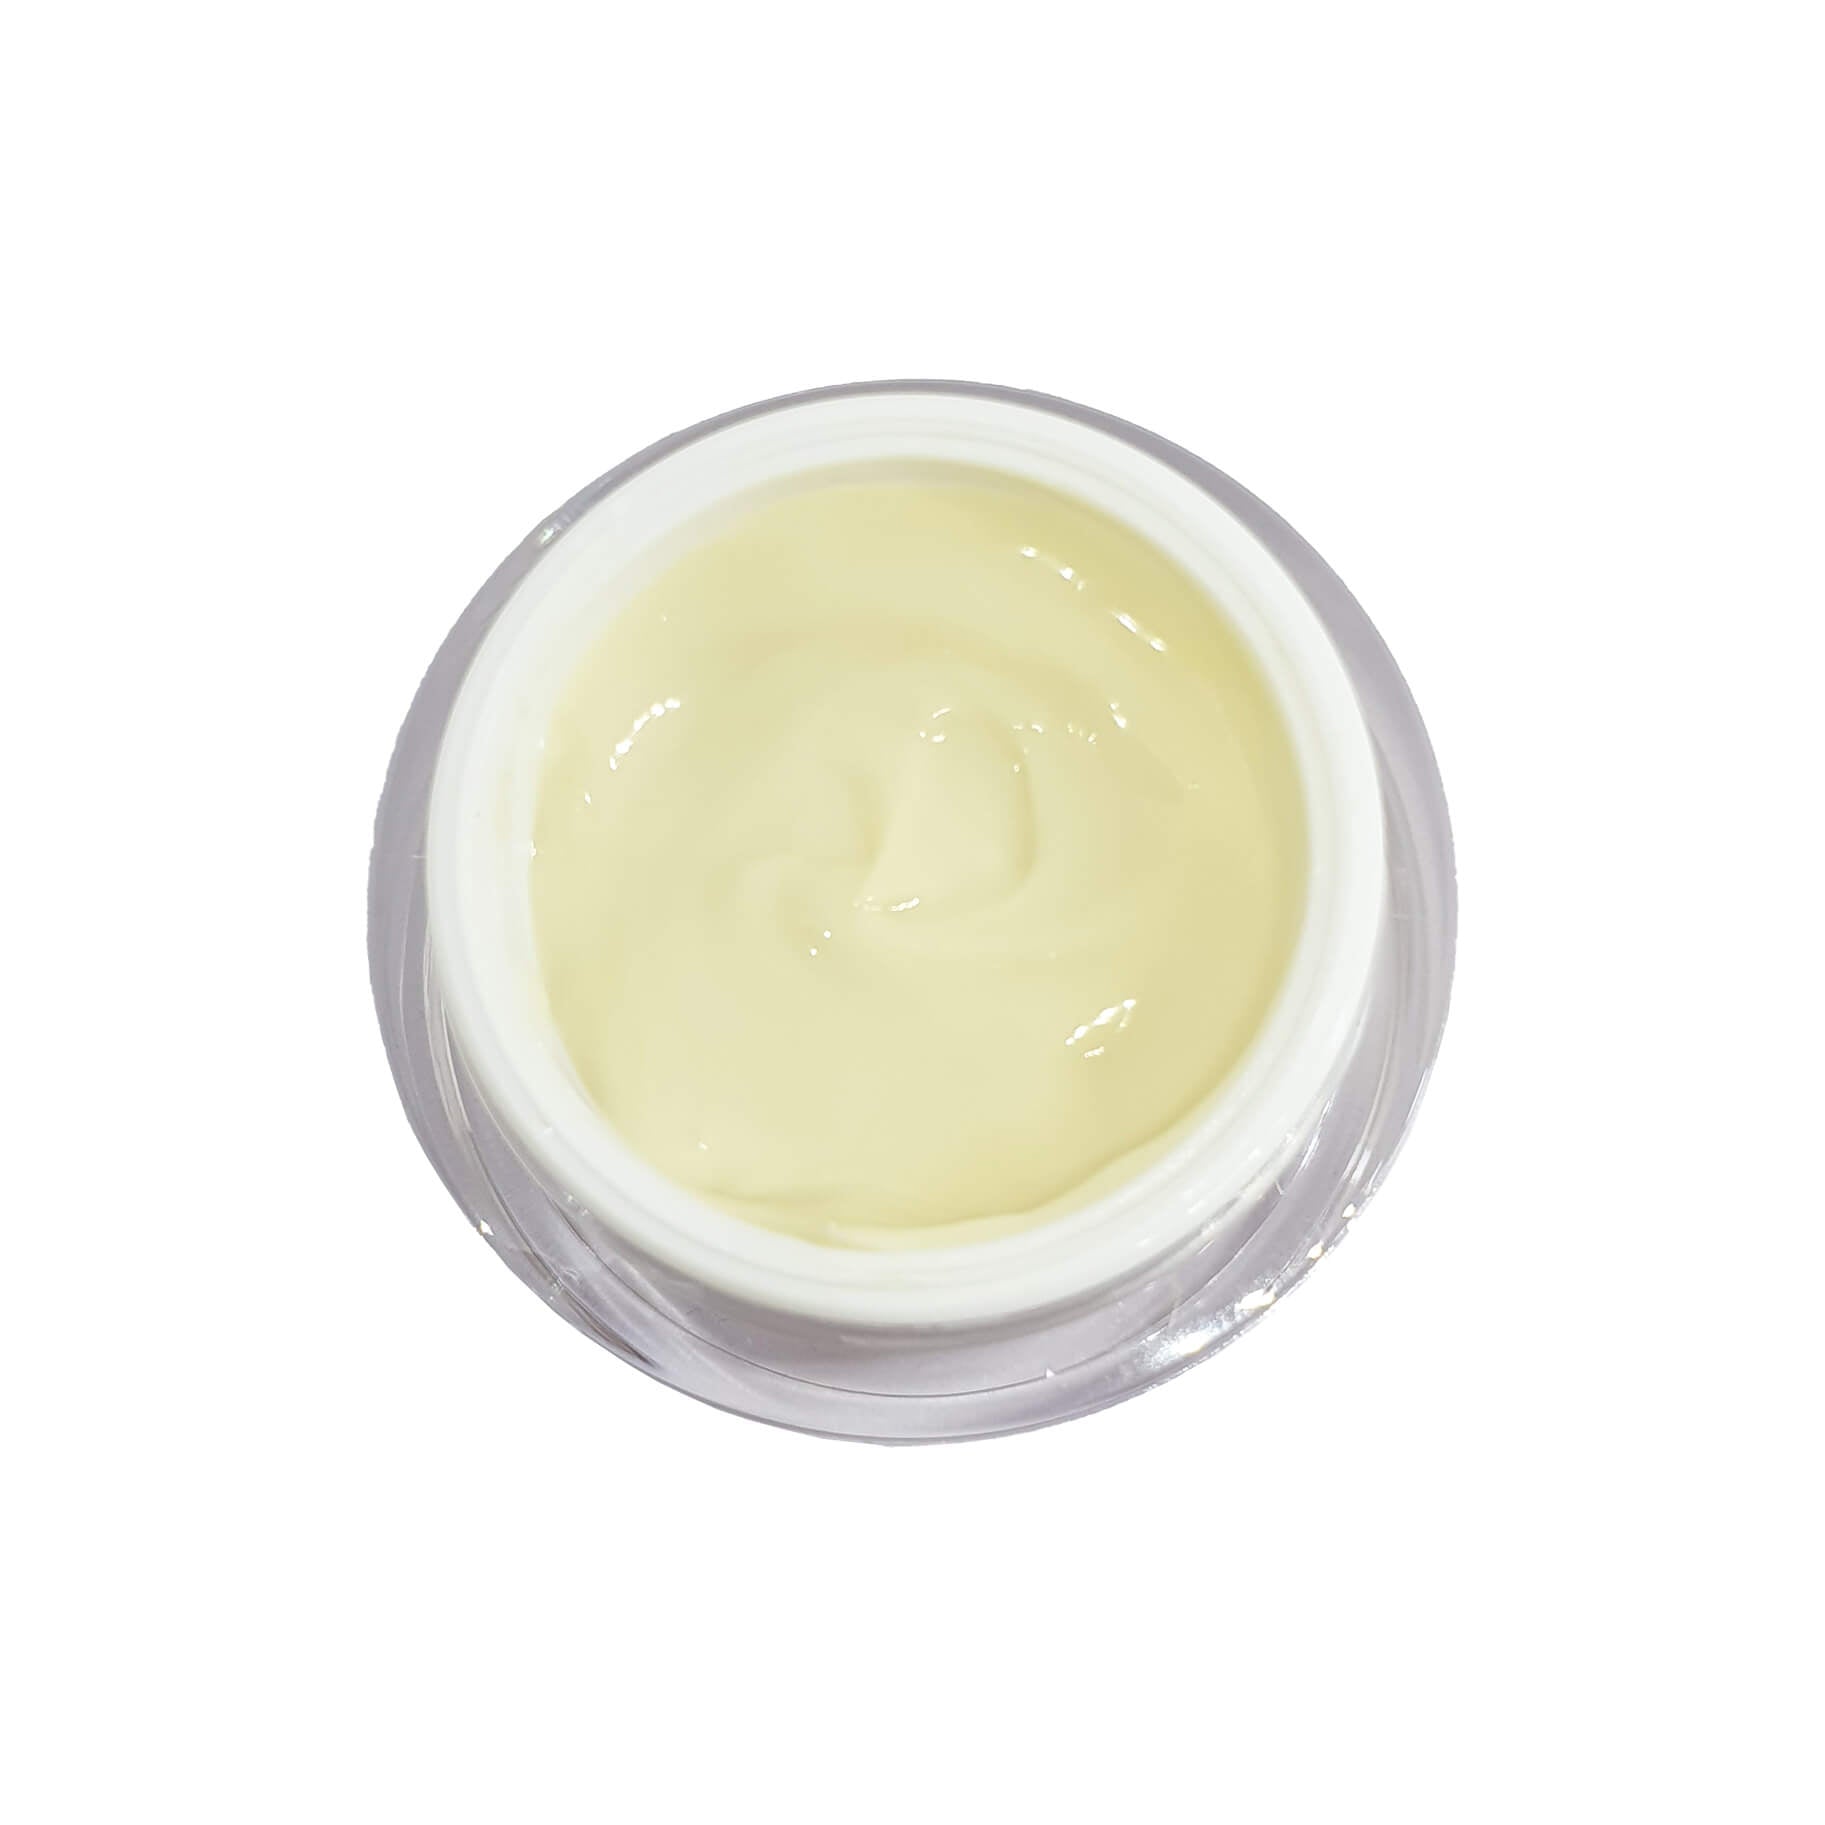 Immagine dall'alto del vaso aperto e della crema all'interno di Day And Night BioRevitalizing Cream 50 ml - 1.7 fl.oz.